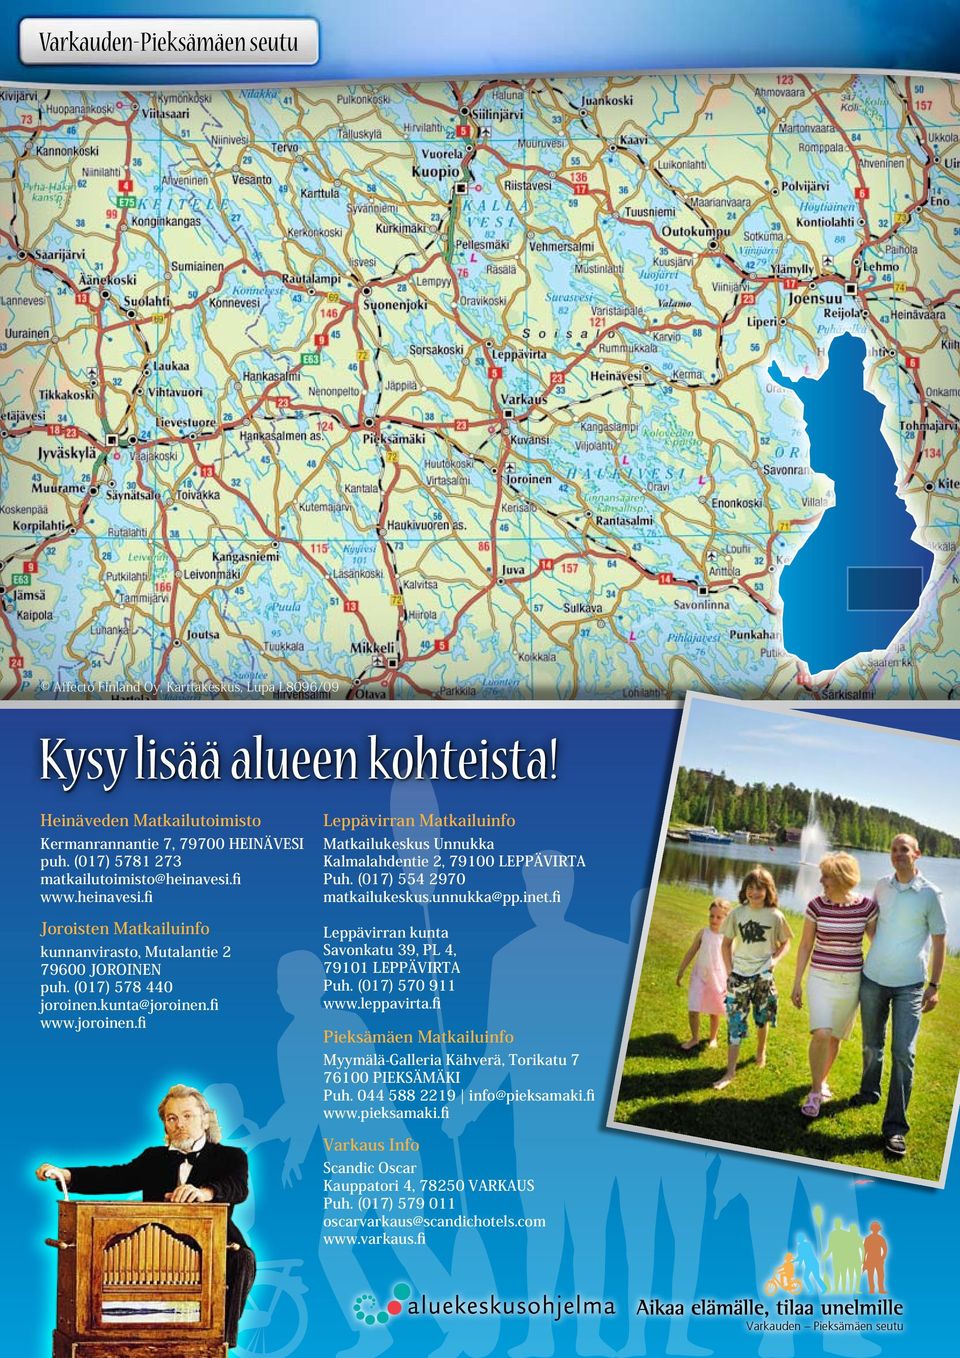 kunta@joroinen.fi www.joroinen.fi Leppävirran Matkailuinfo Matkailukeskus Unnukka Kalmalahdentie 2, 79100 Puh. (017) 554 2970 matkailukeskus.unnukka@pp.inet.